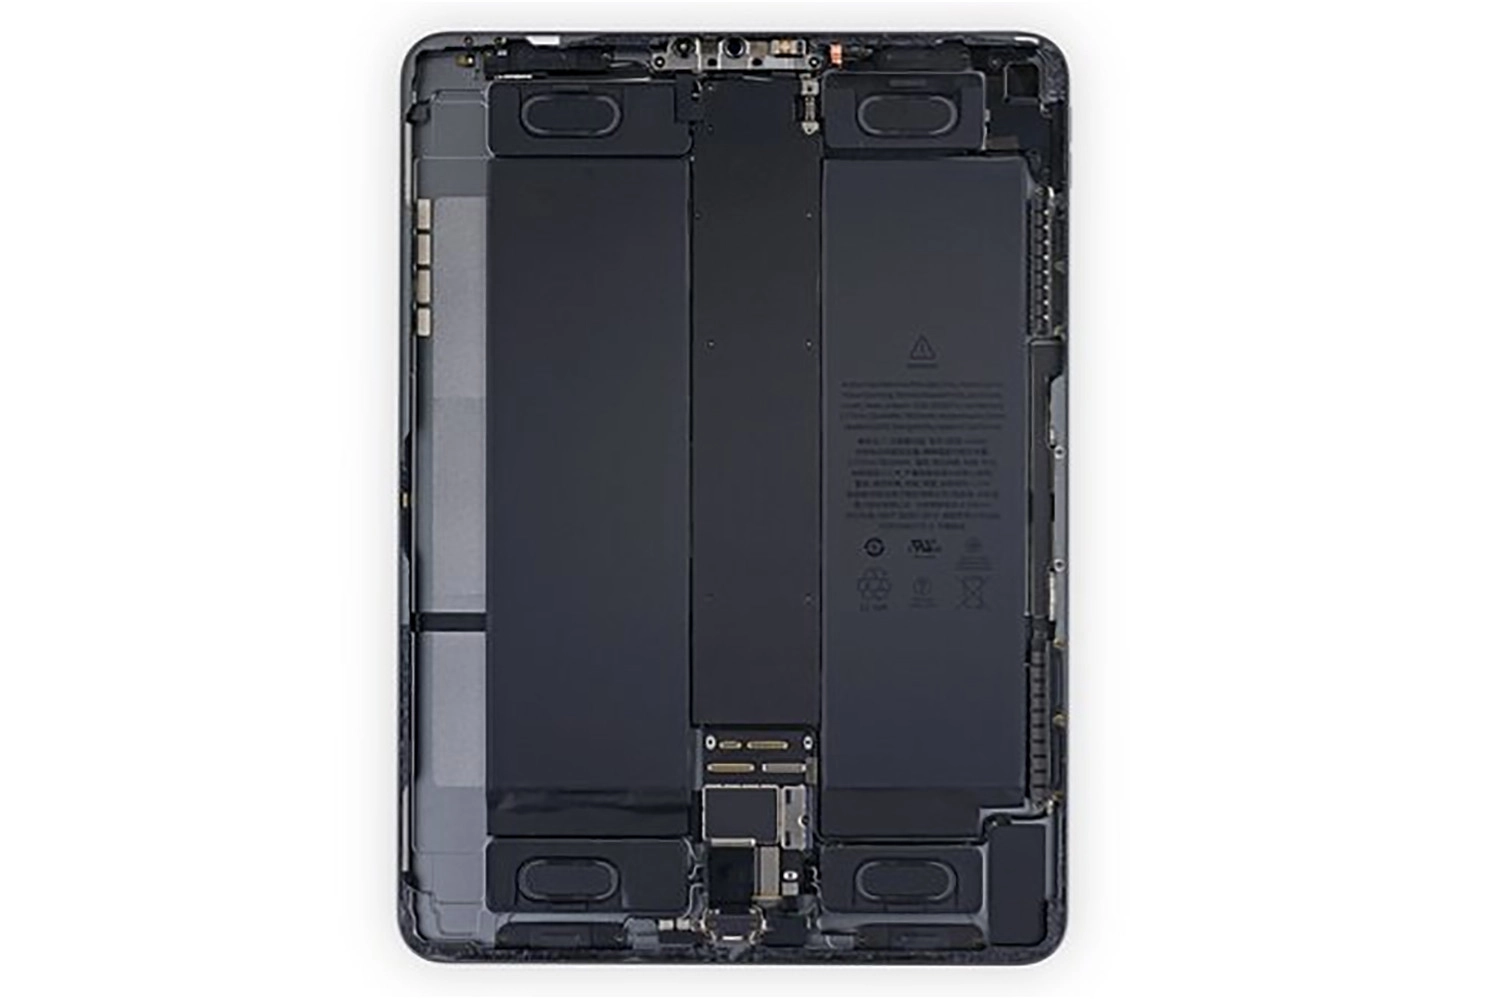 Nguyên nhân khiến Face ID của iPad Pro 11 inch (2018) bị hỏng